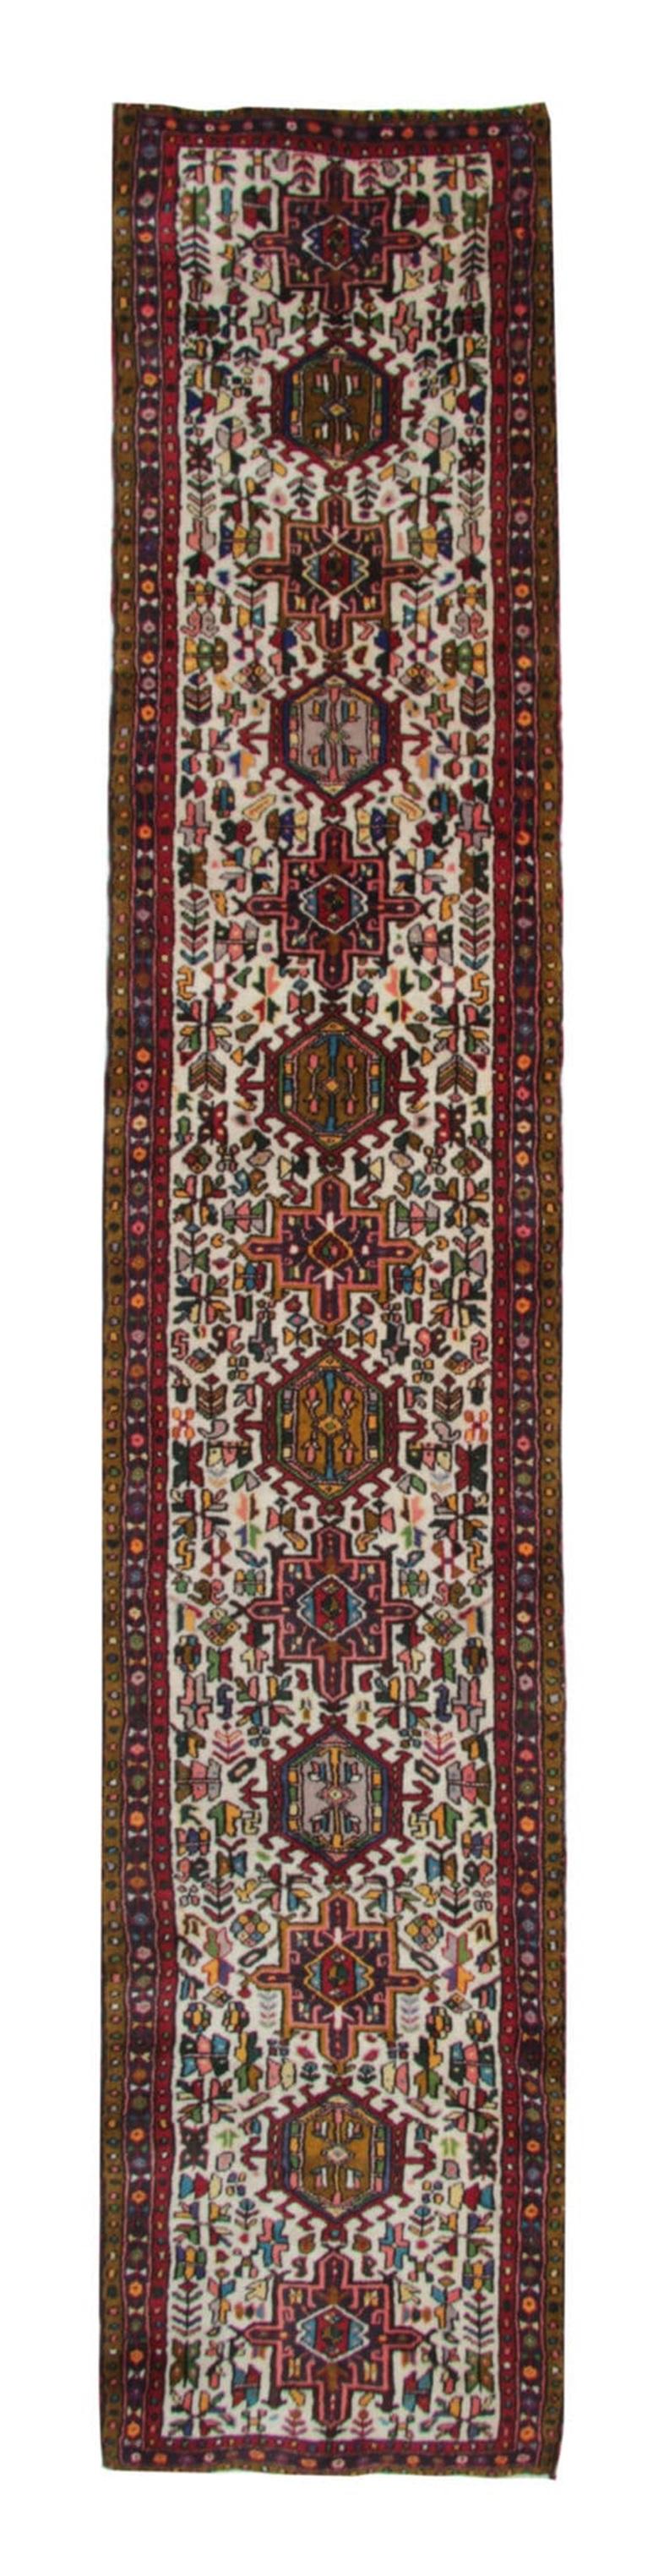 Persian Vintage Runner Geometric Runner Rug, Cream Carpet Runner, Wool Rug For Sale